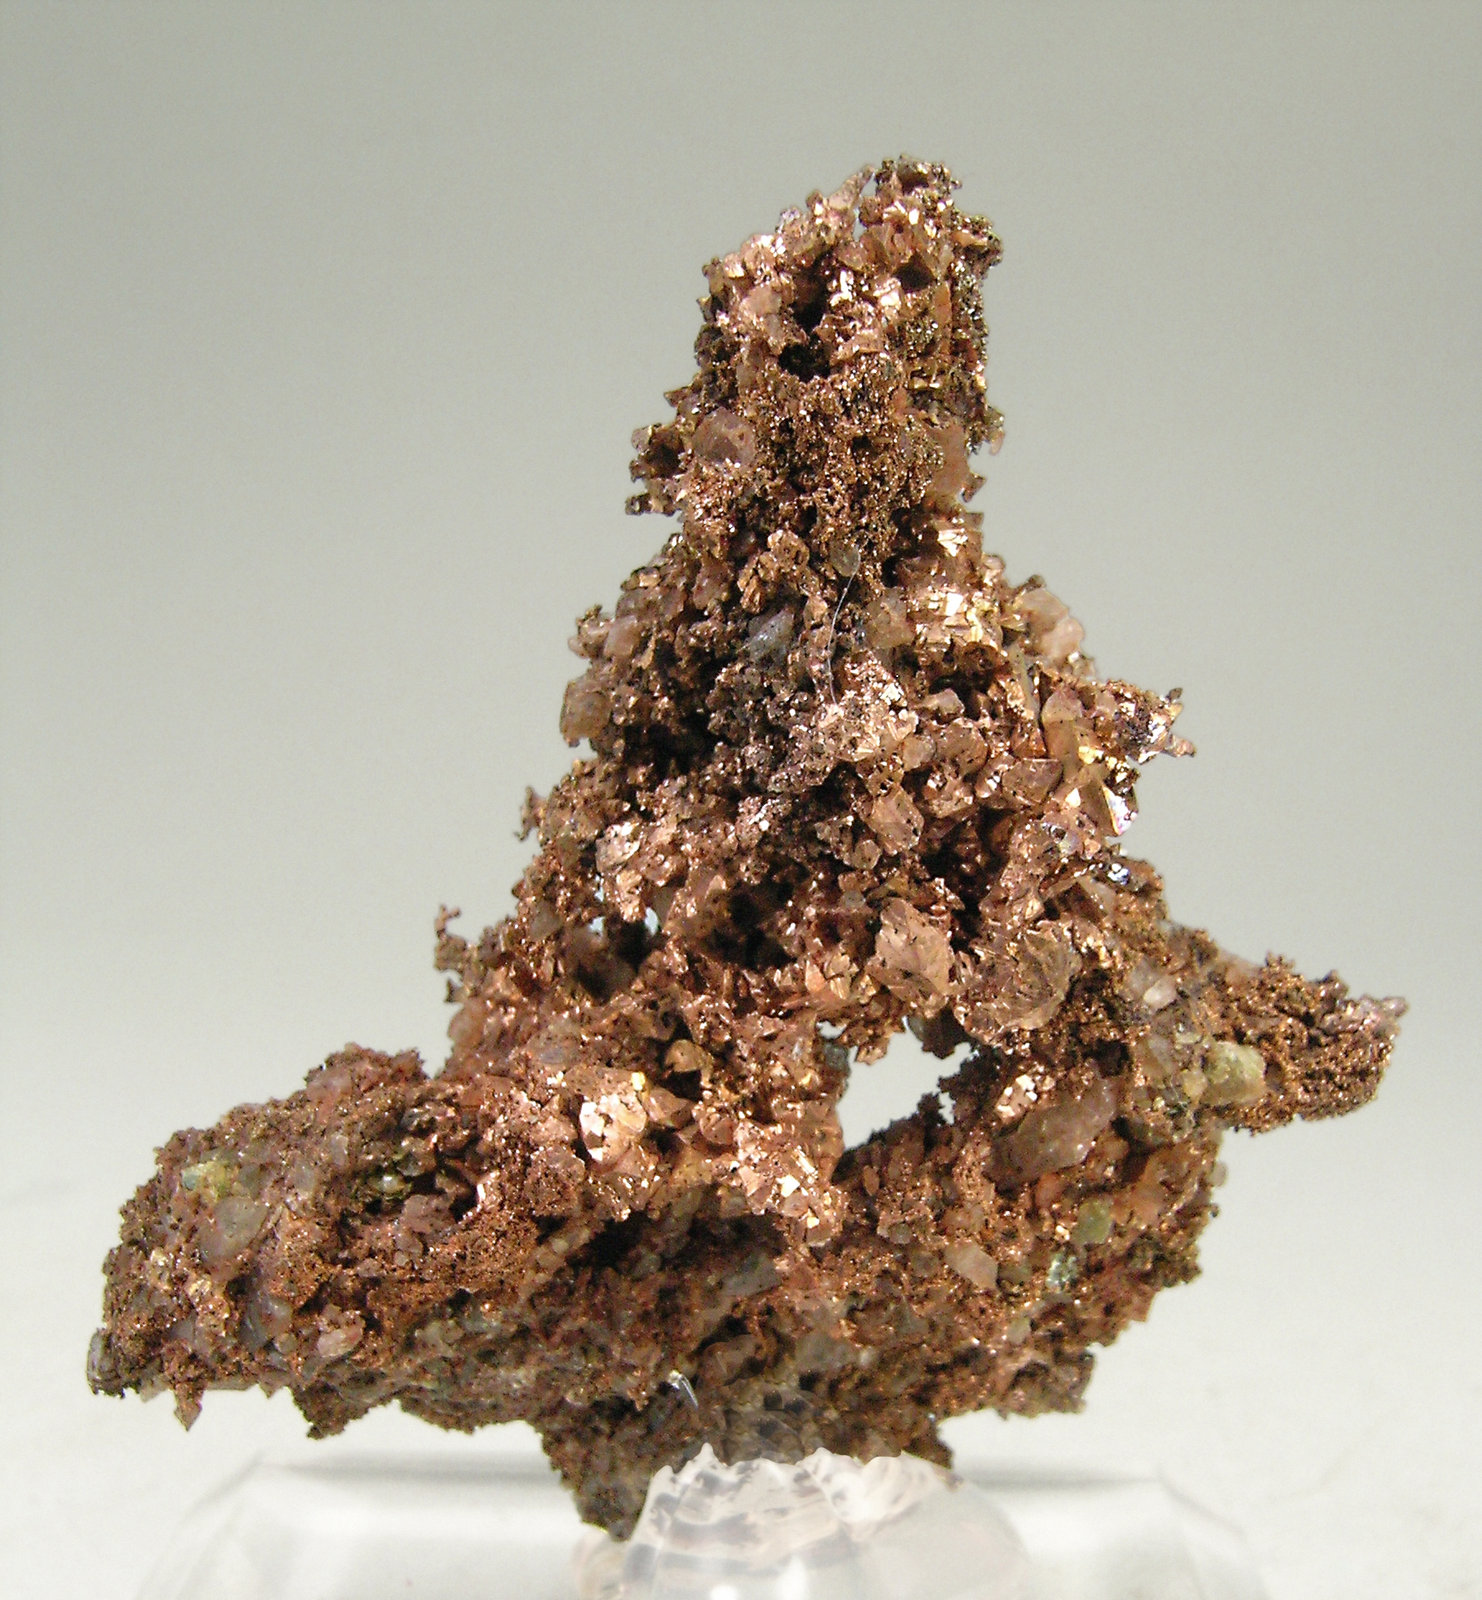 specimens/s_imagesN6/Copper-NJ11N6r.jpg